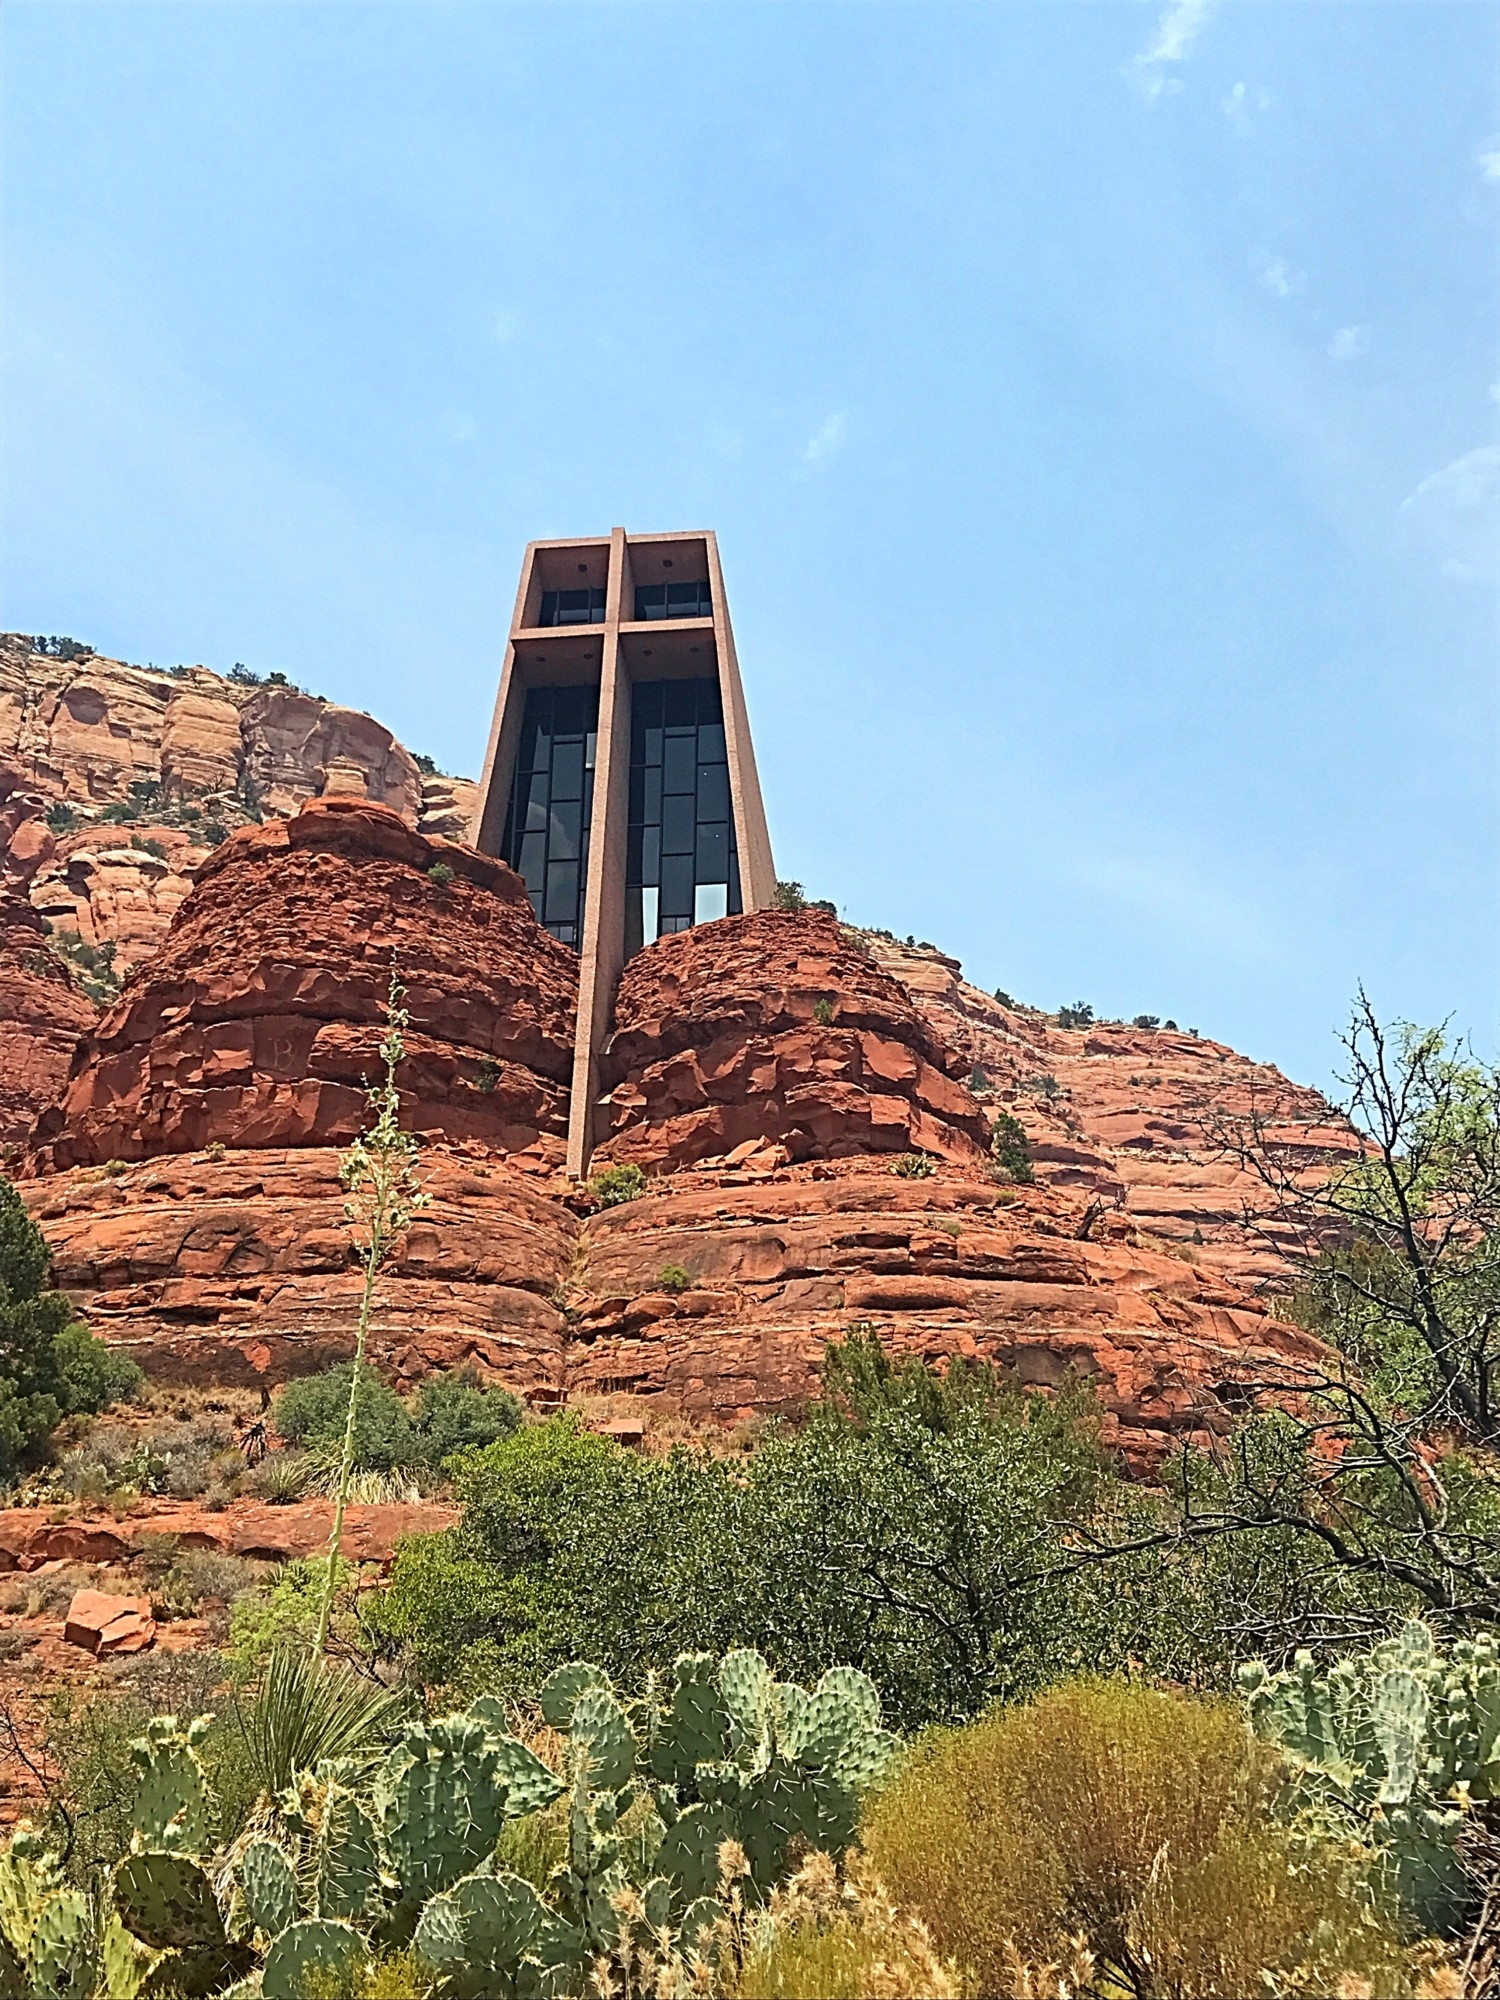 Chapel of the Holy Cross in Sedona, Arizona